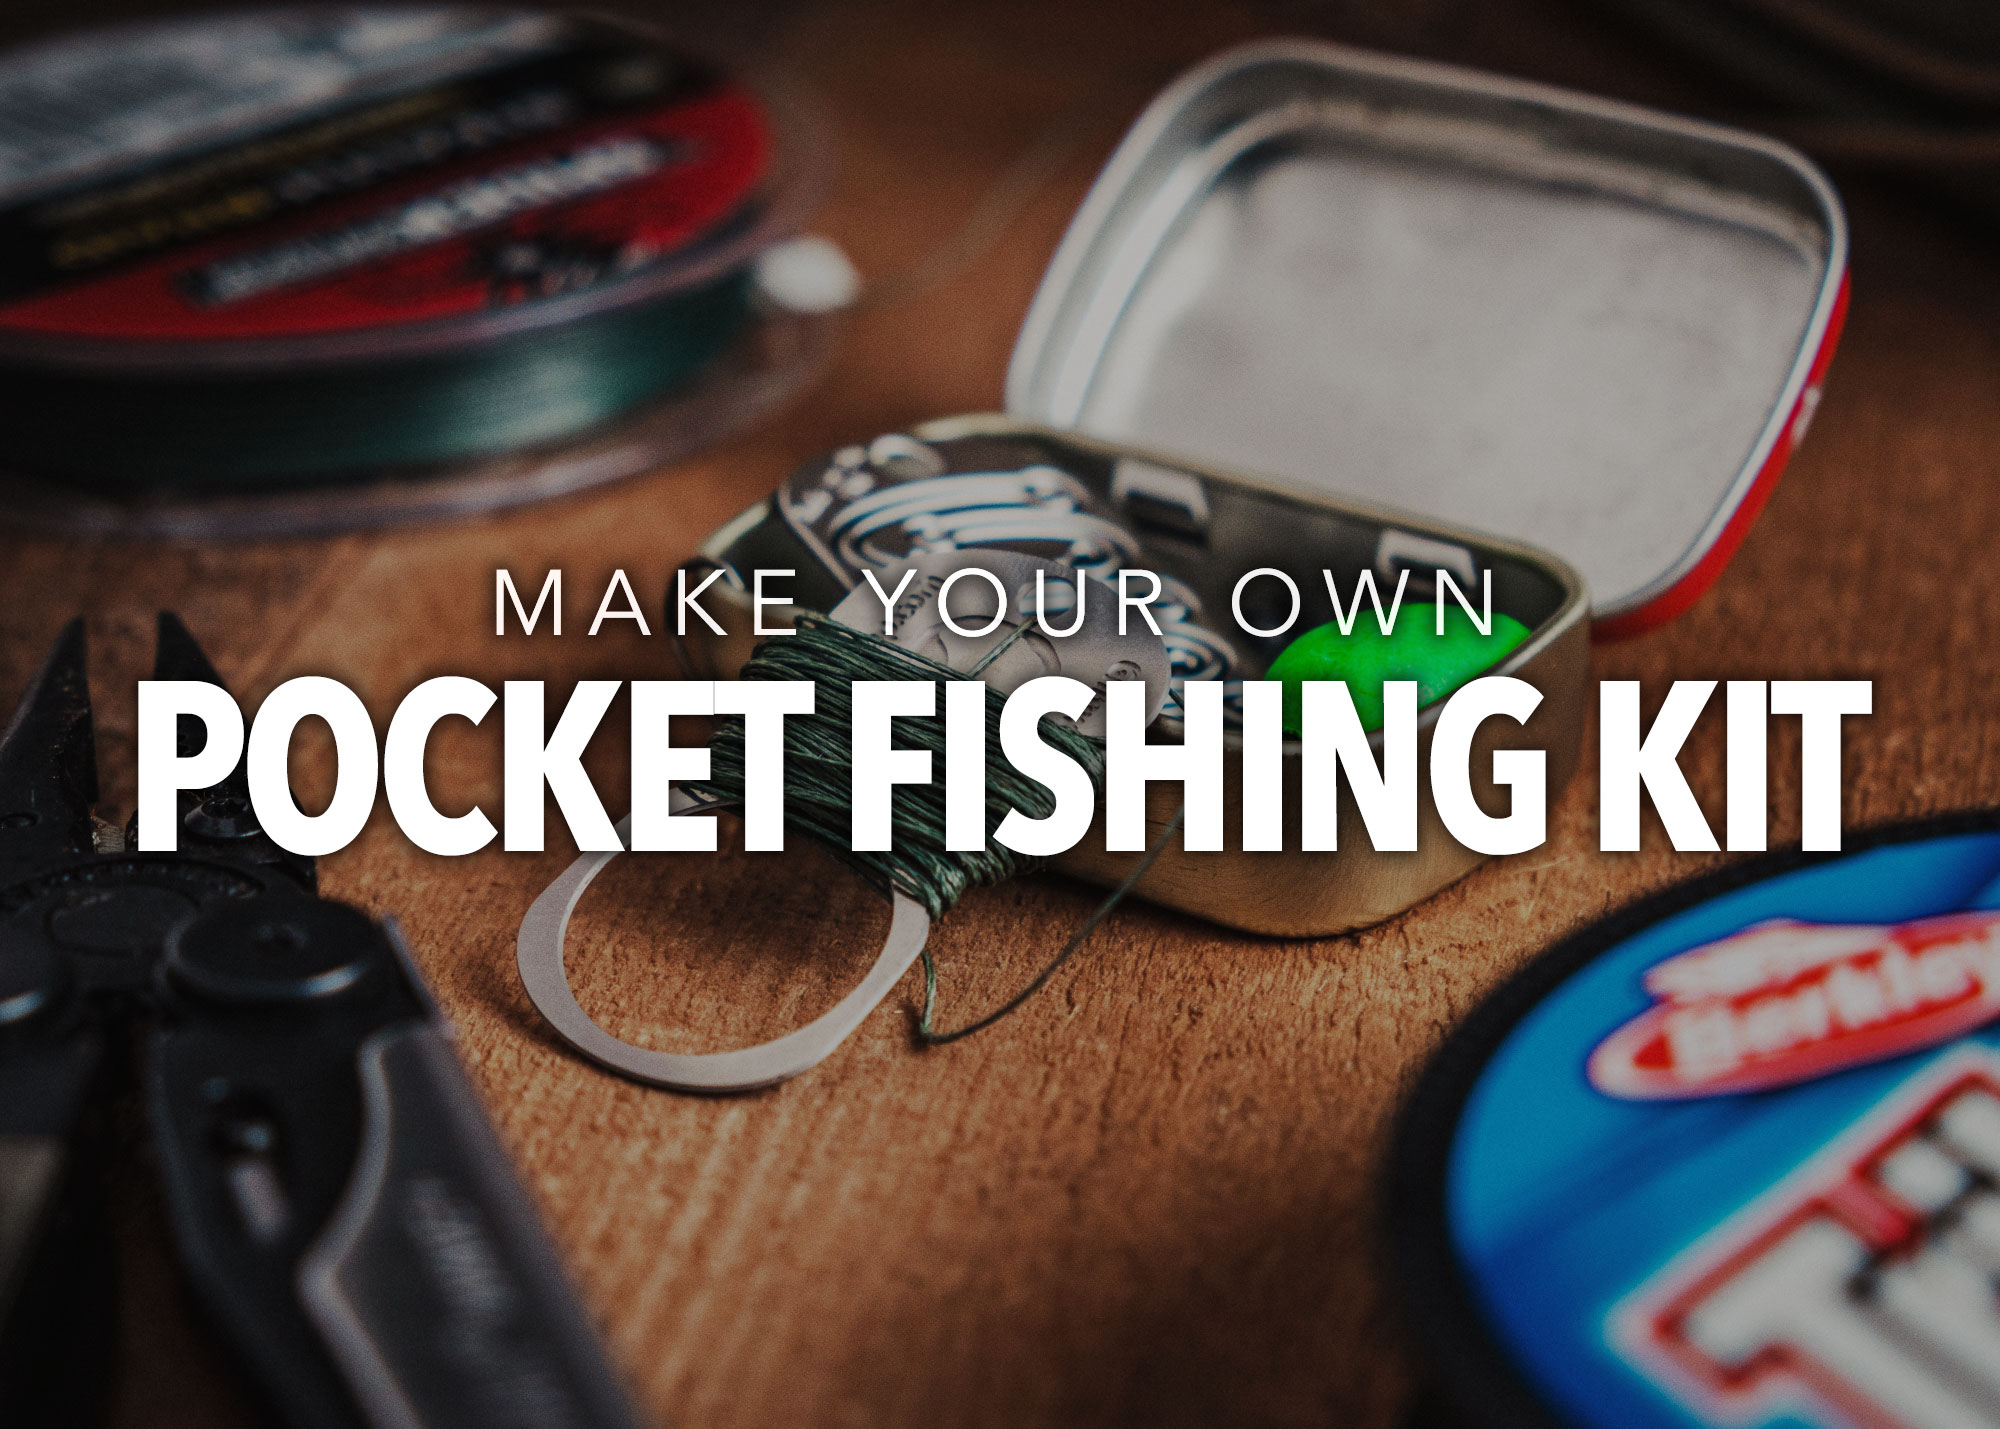 Make your own Pocket Fishing Kit